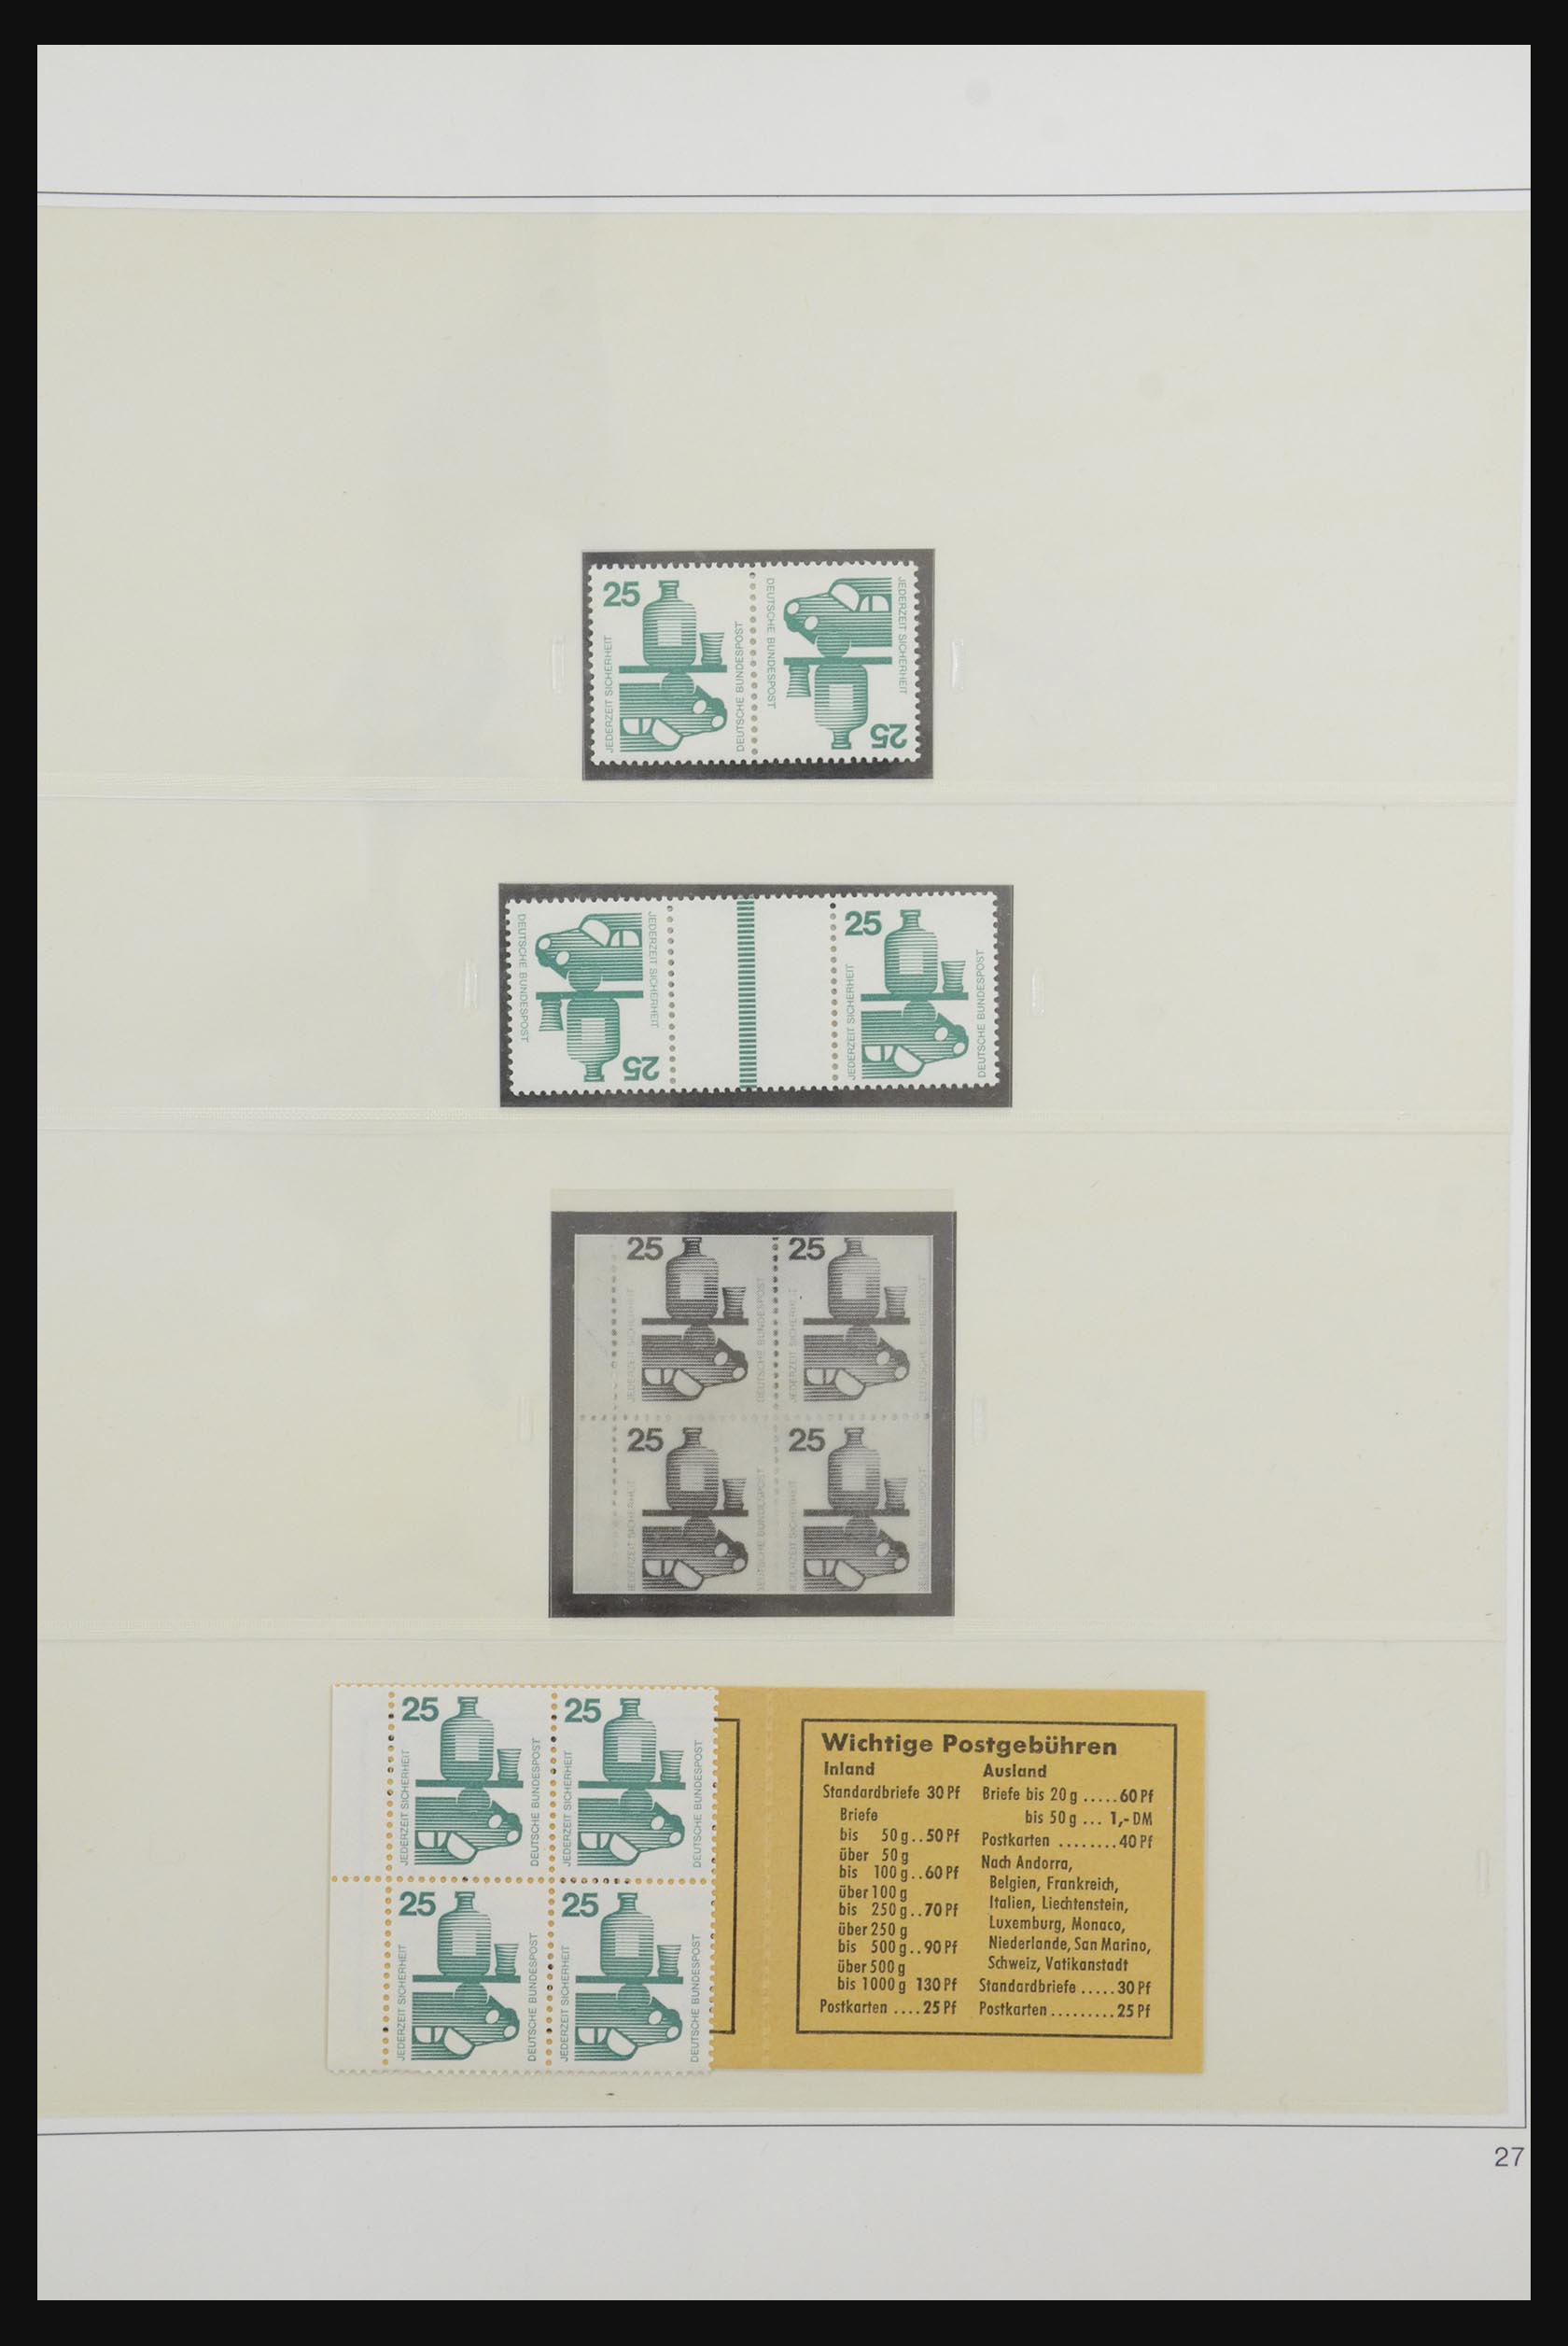 31842 037 - 31842 Bundespost combinations 1951-2003.